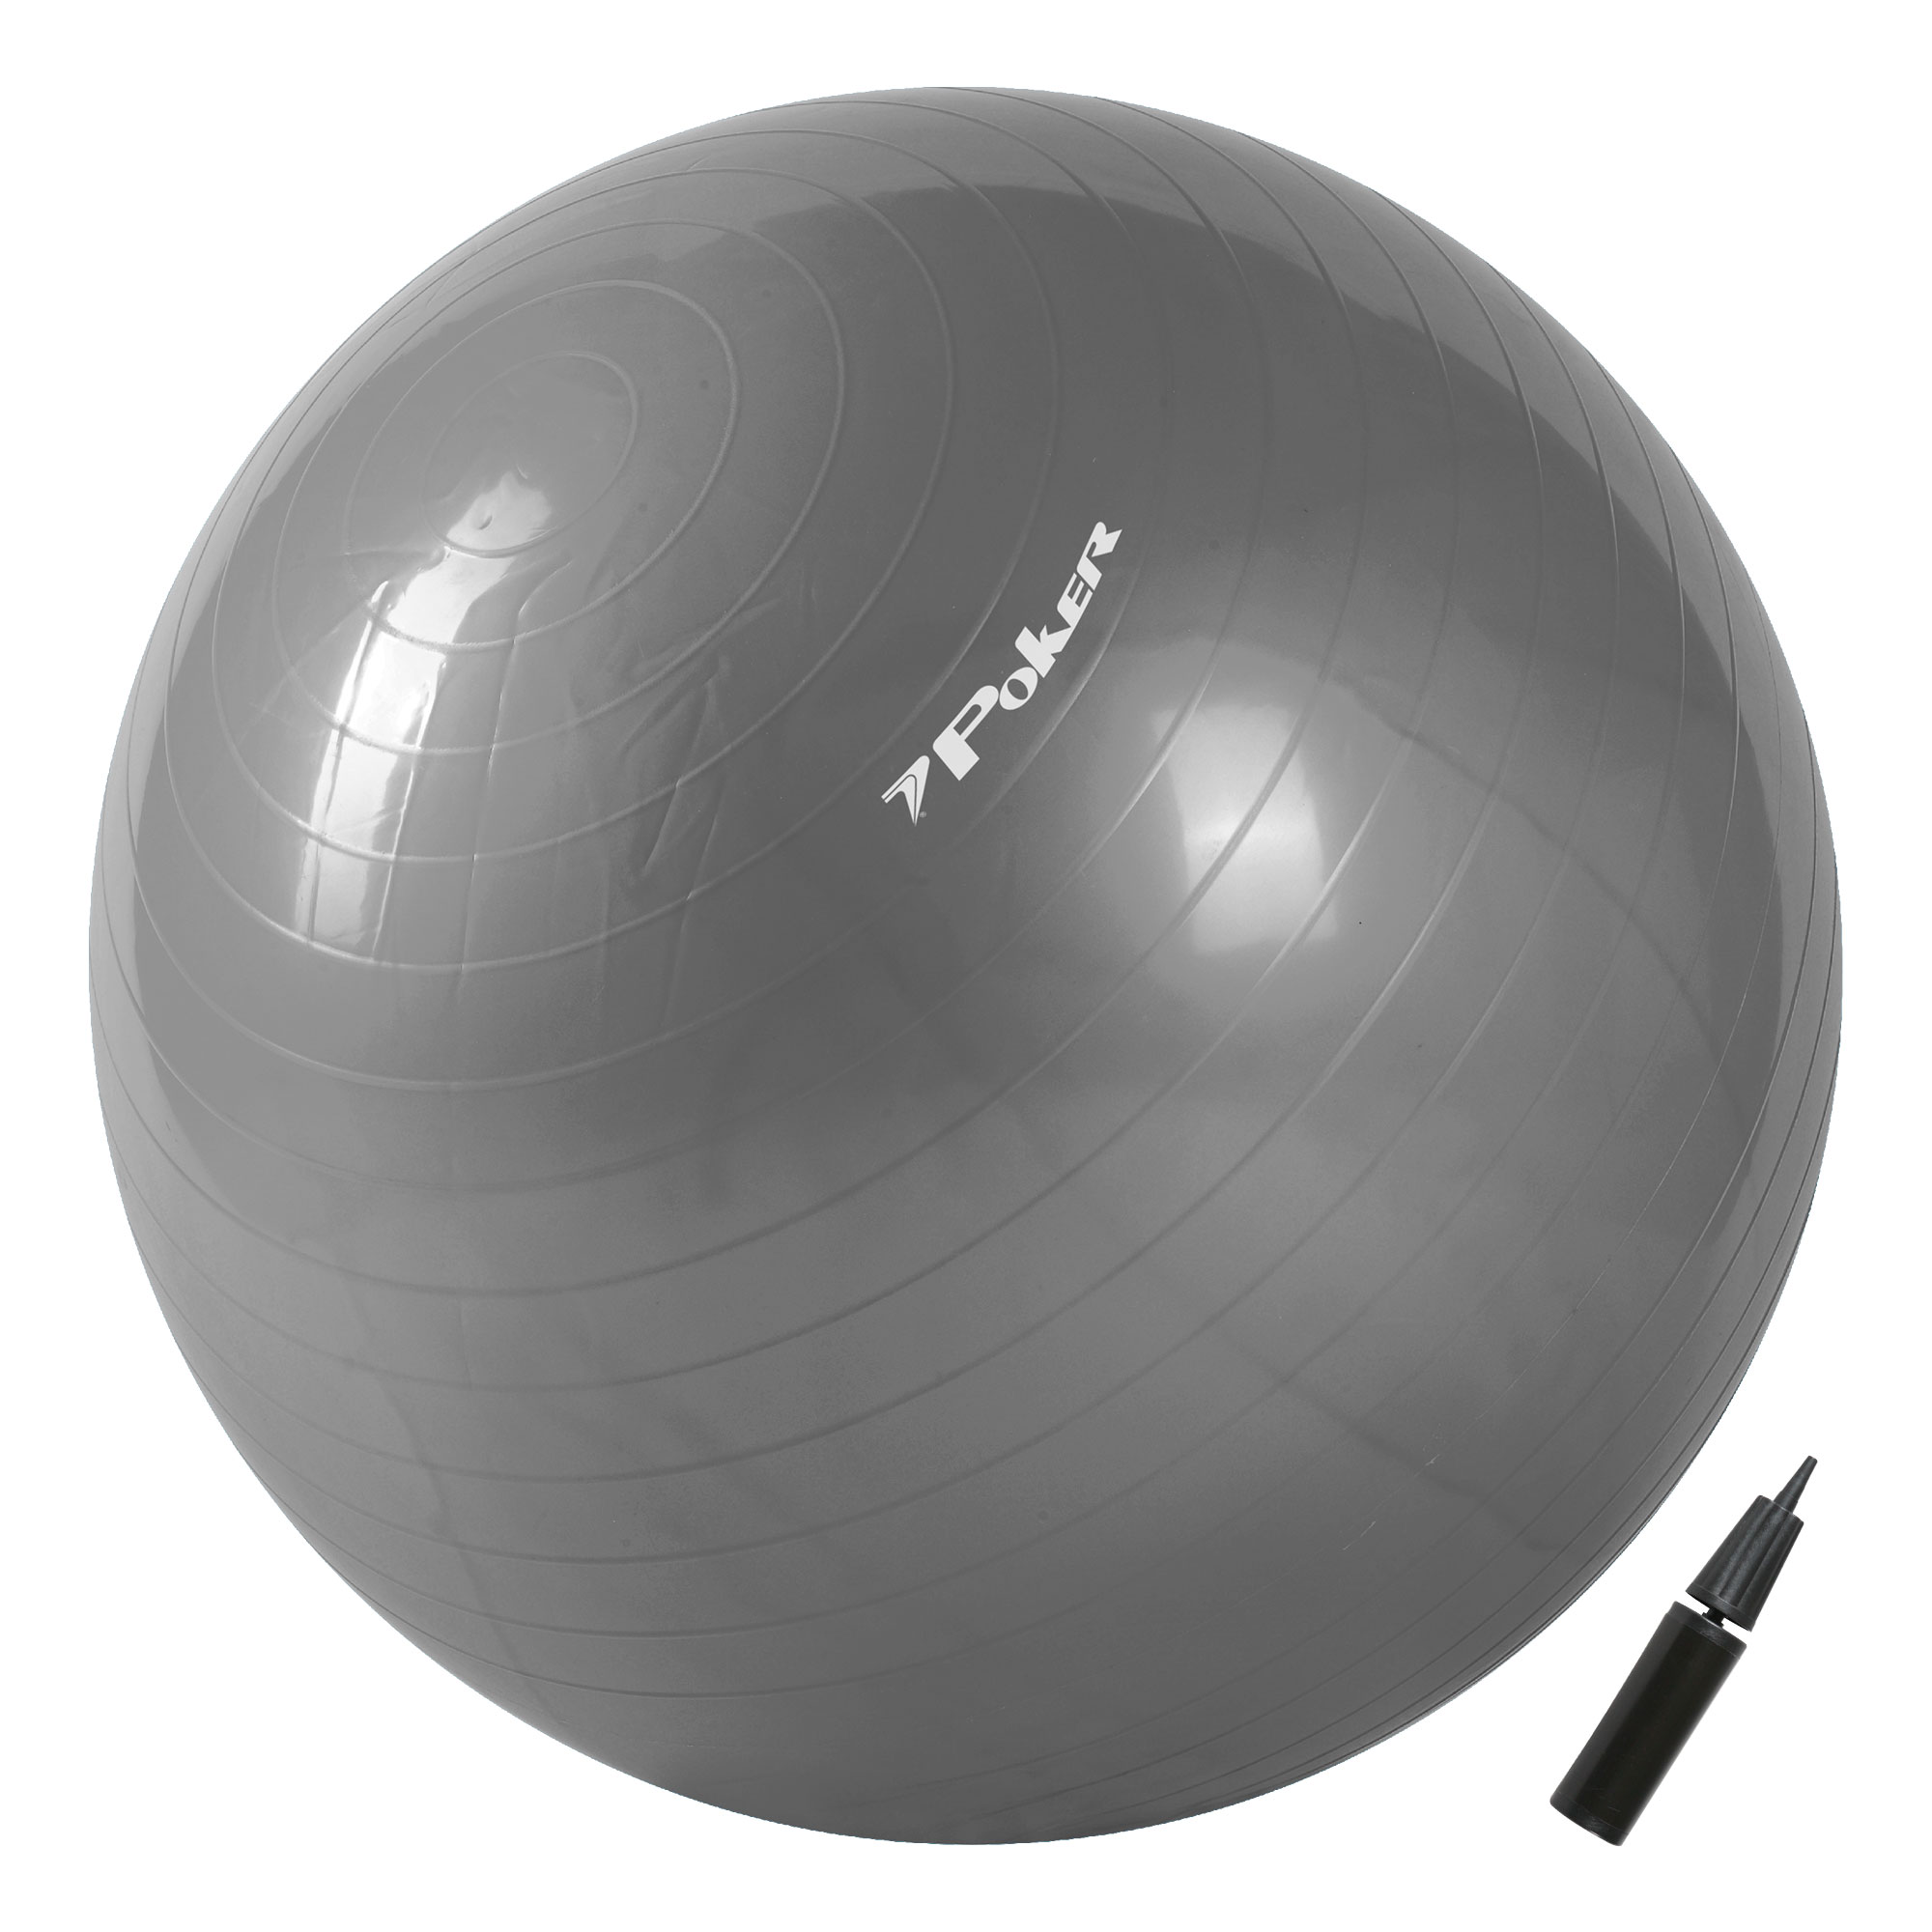 Bola de Pilates Suiça Gym Ball com Bomba de Ar - 85cm 09095